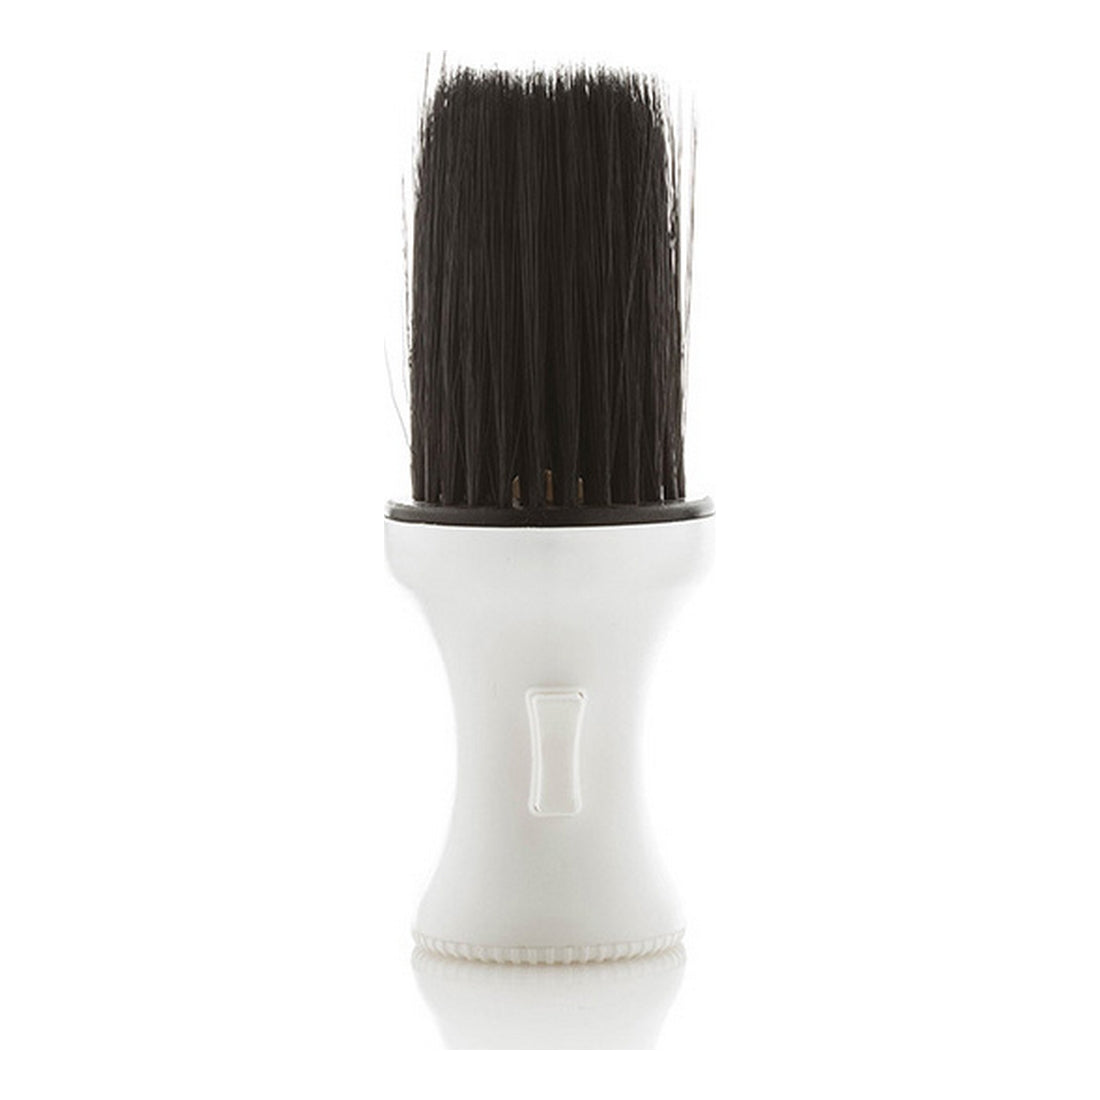 Shaving Brush Pro Xanitalia